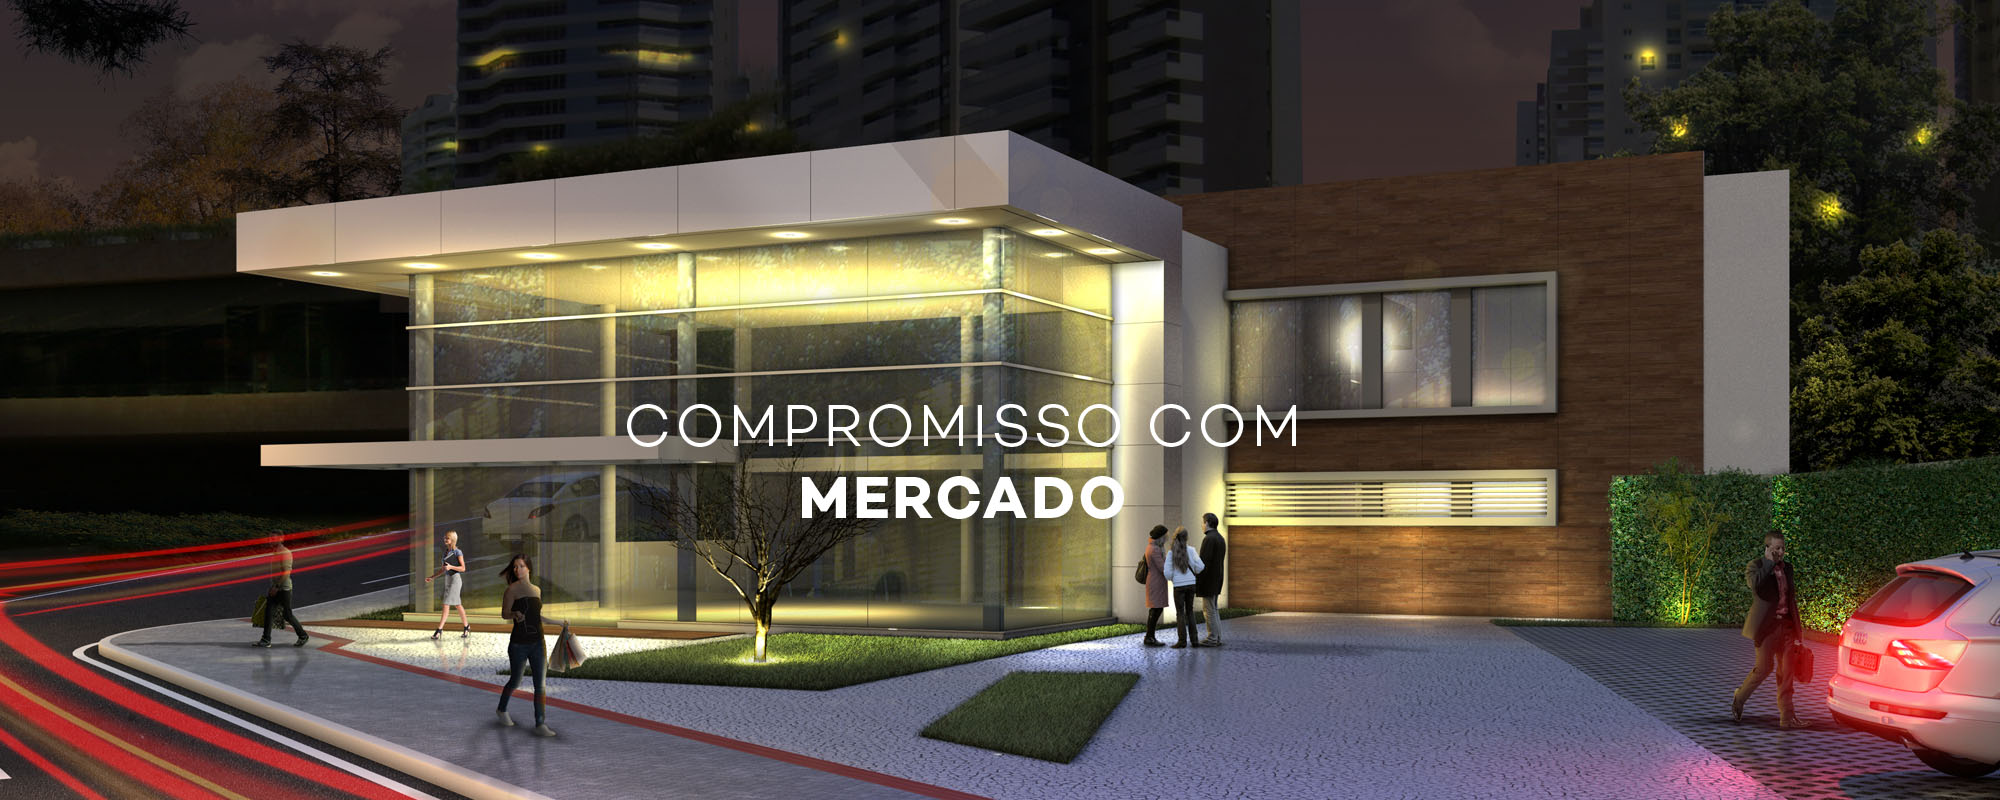 COMPROMISO-MERCADO